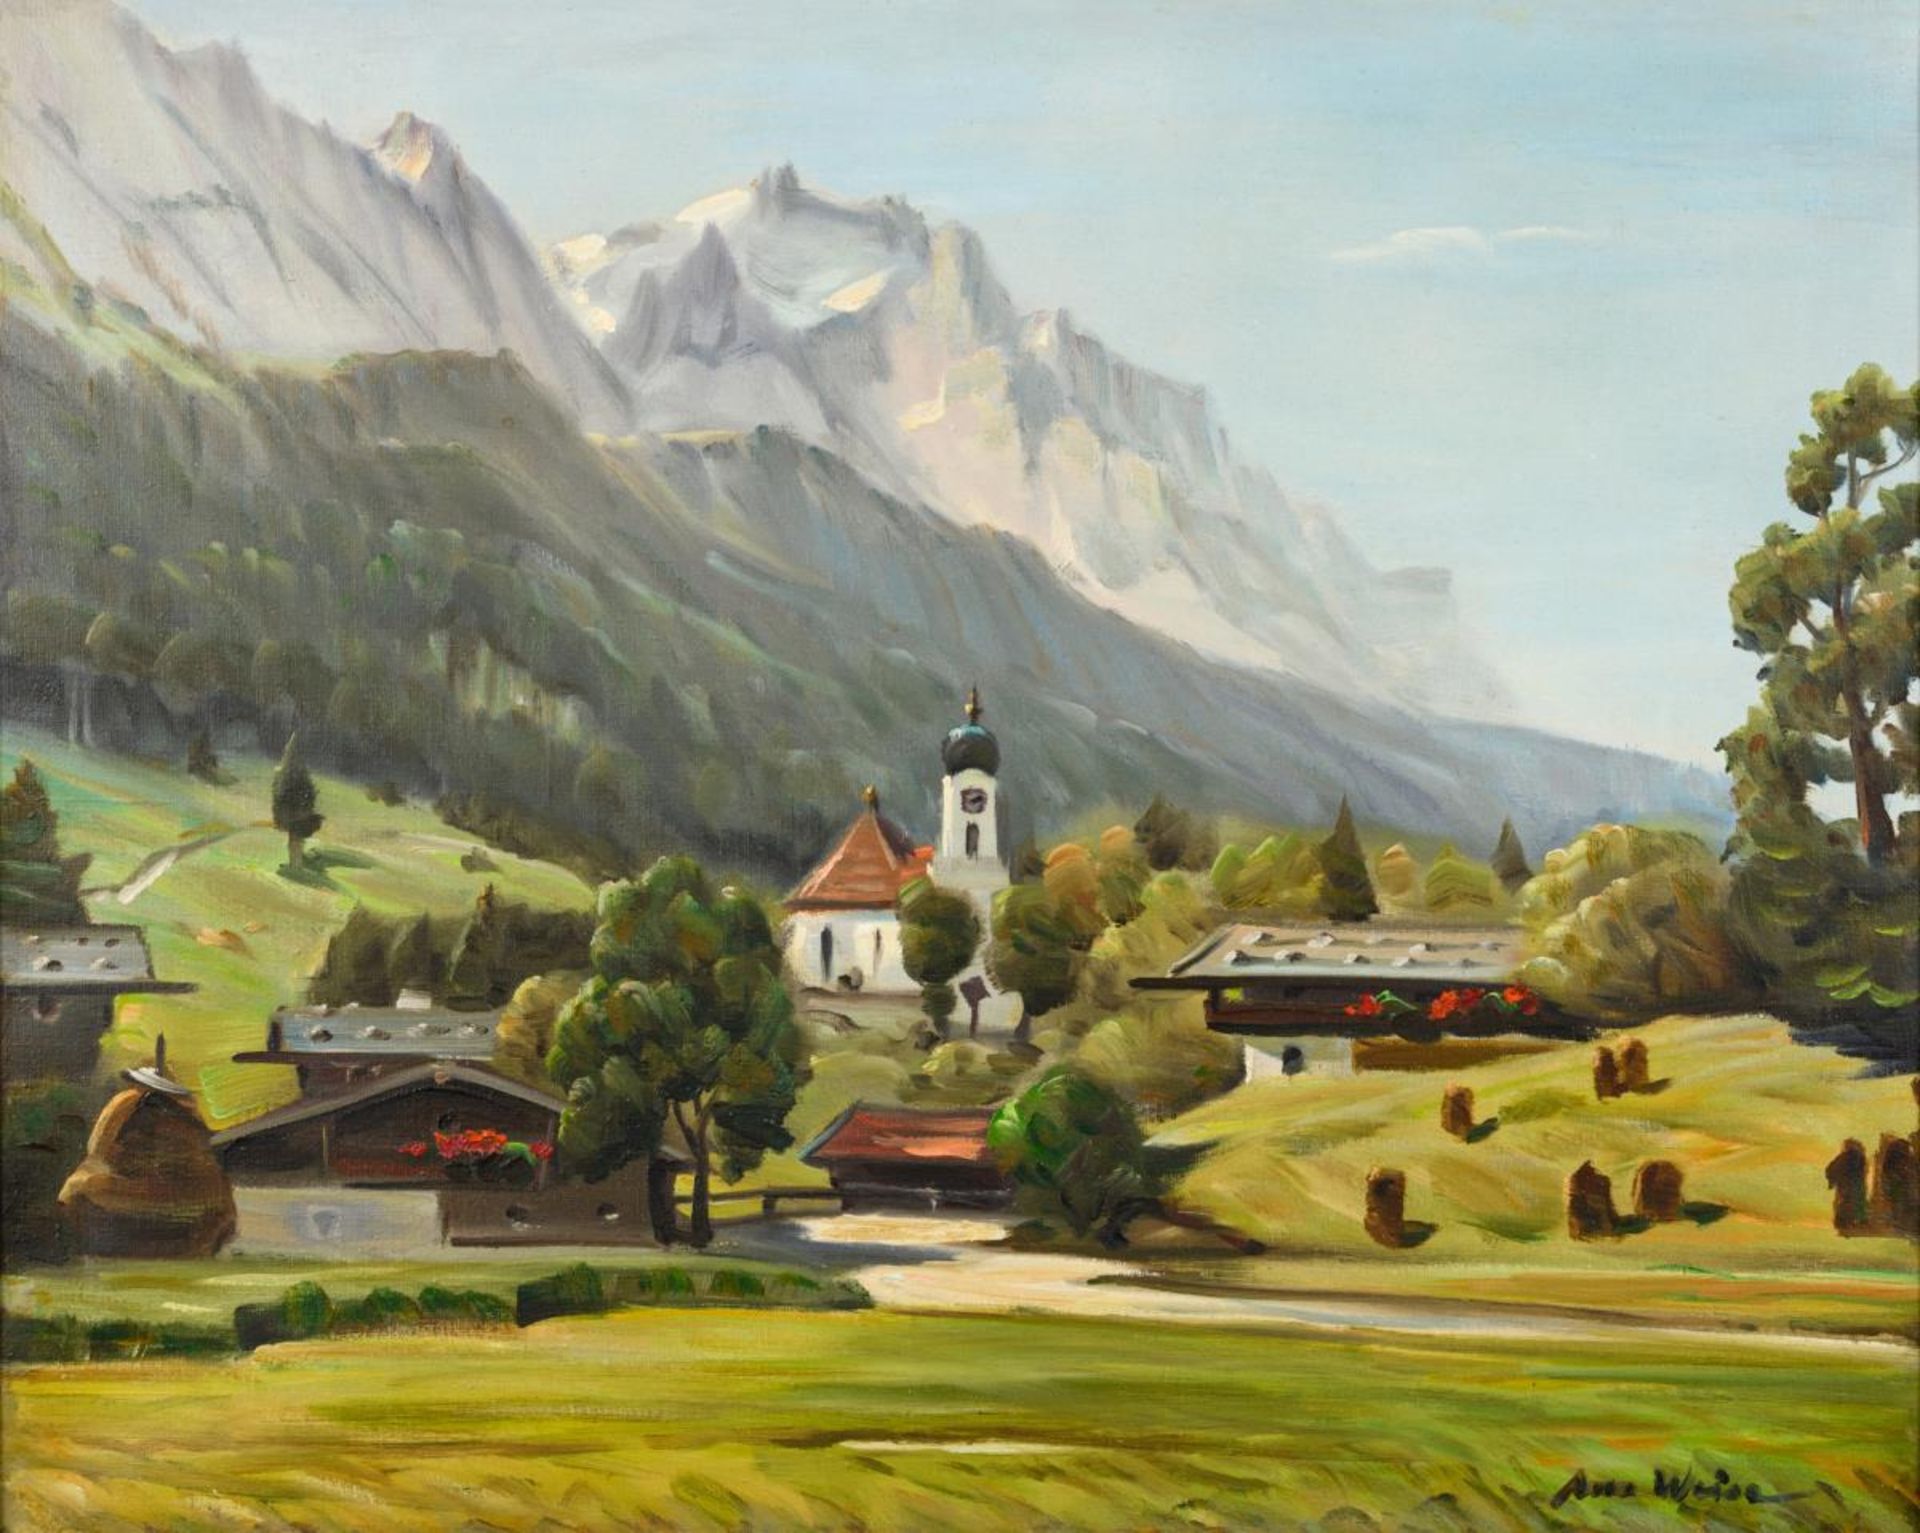 WEISE, Anso (1895 Ilmenau - 1986 Ohlstadt). "Grainau mit Zugspitze".